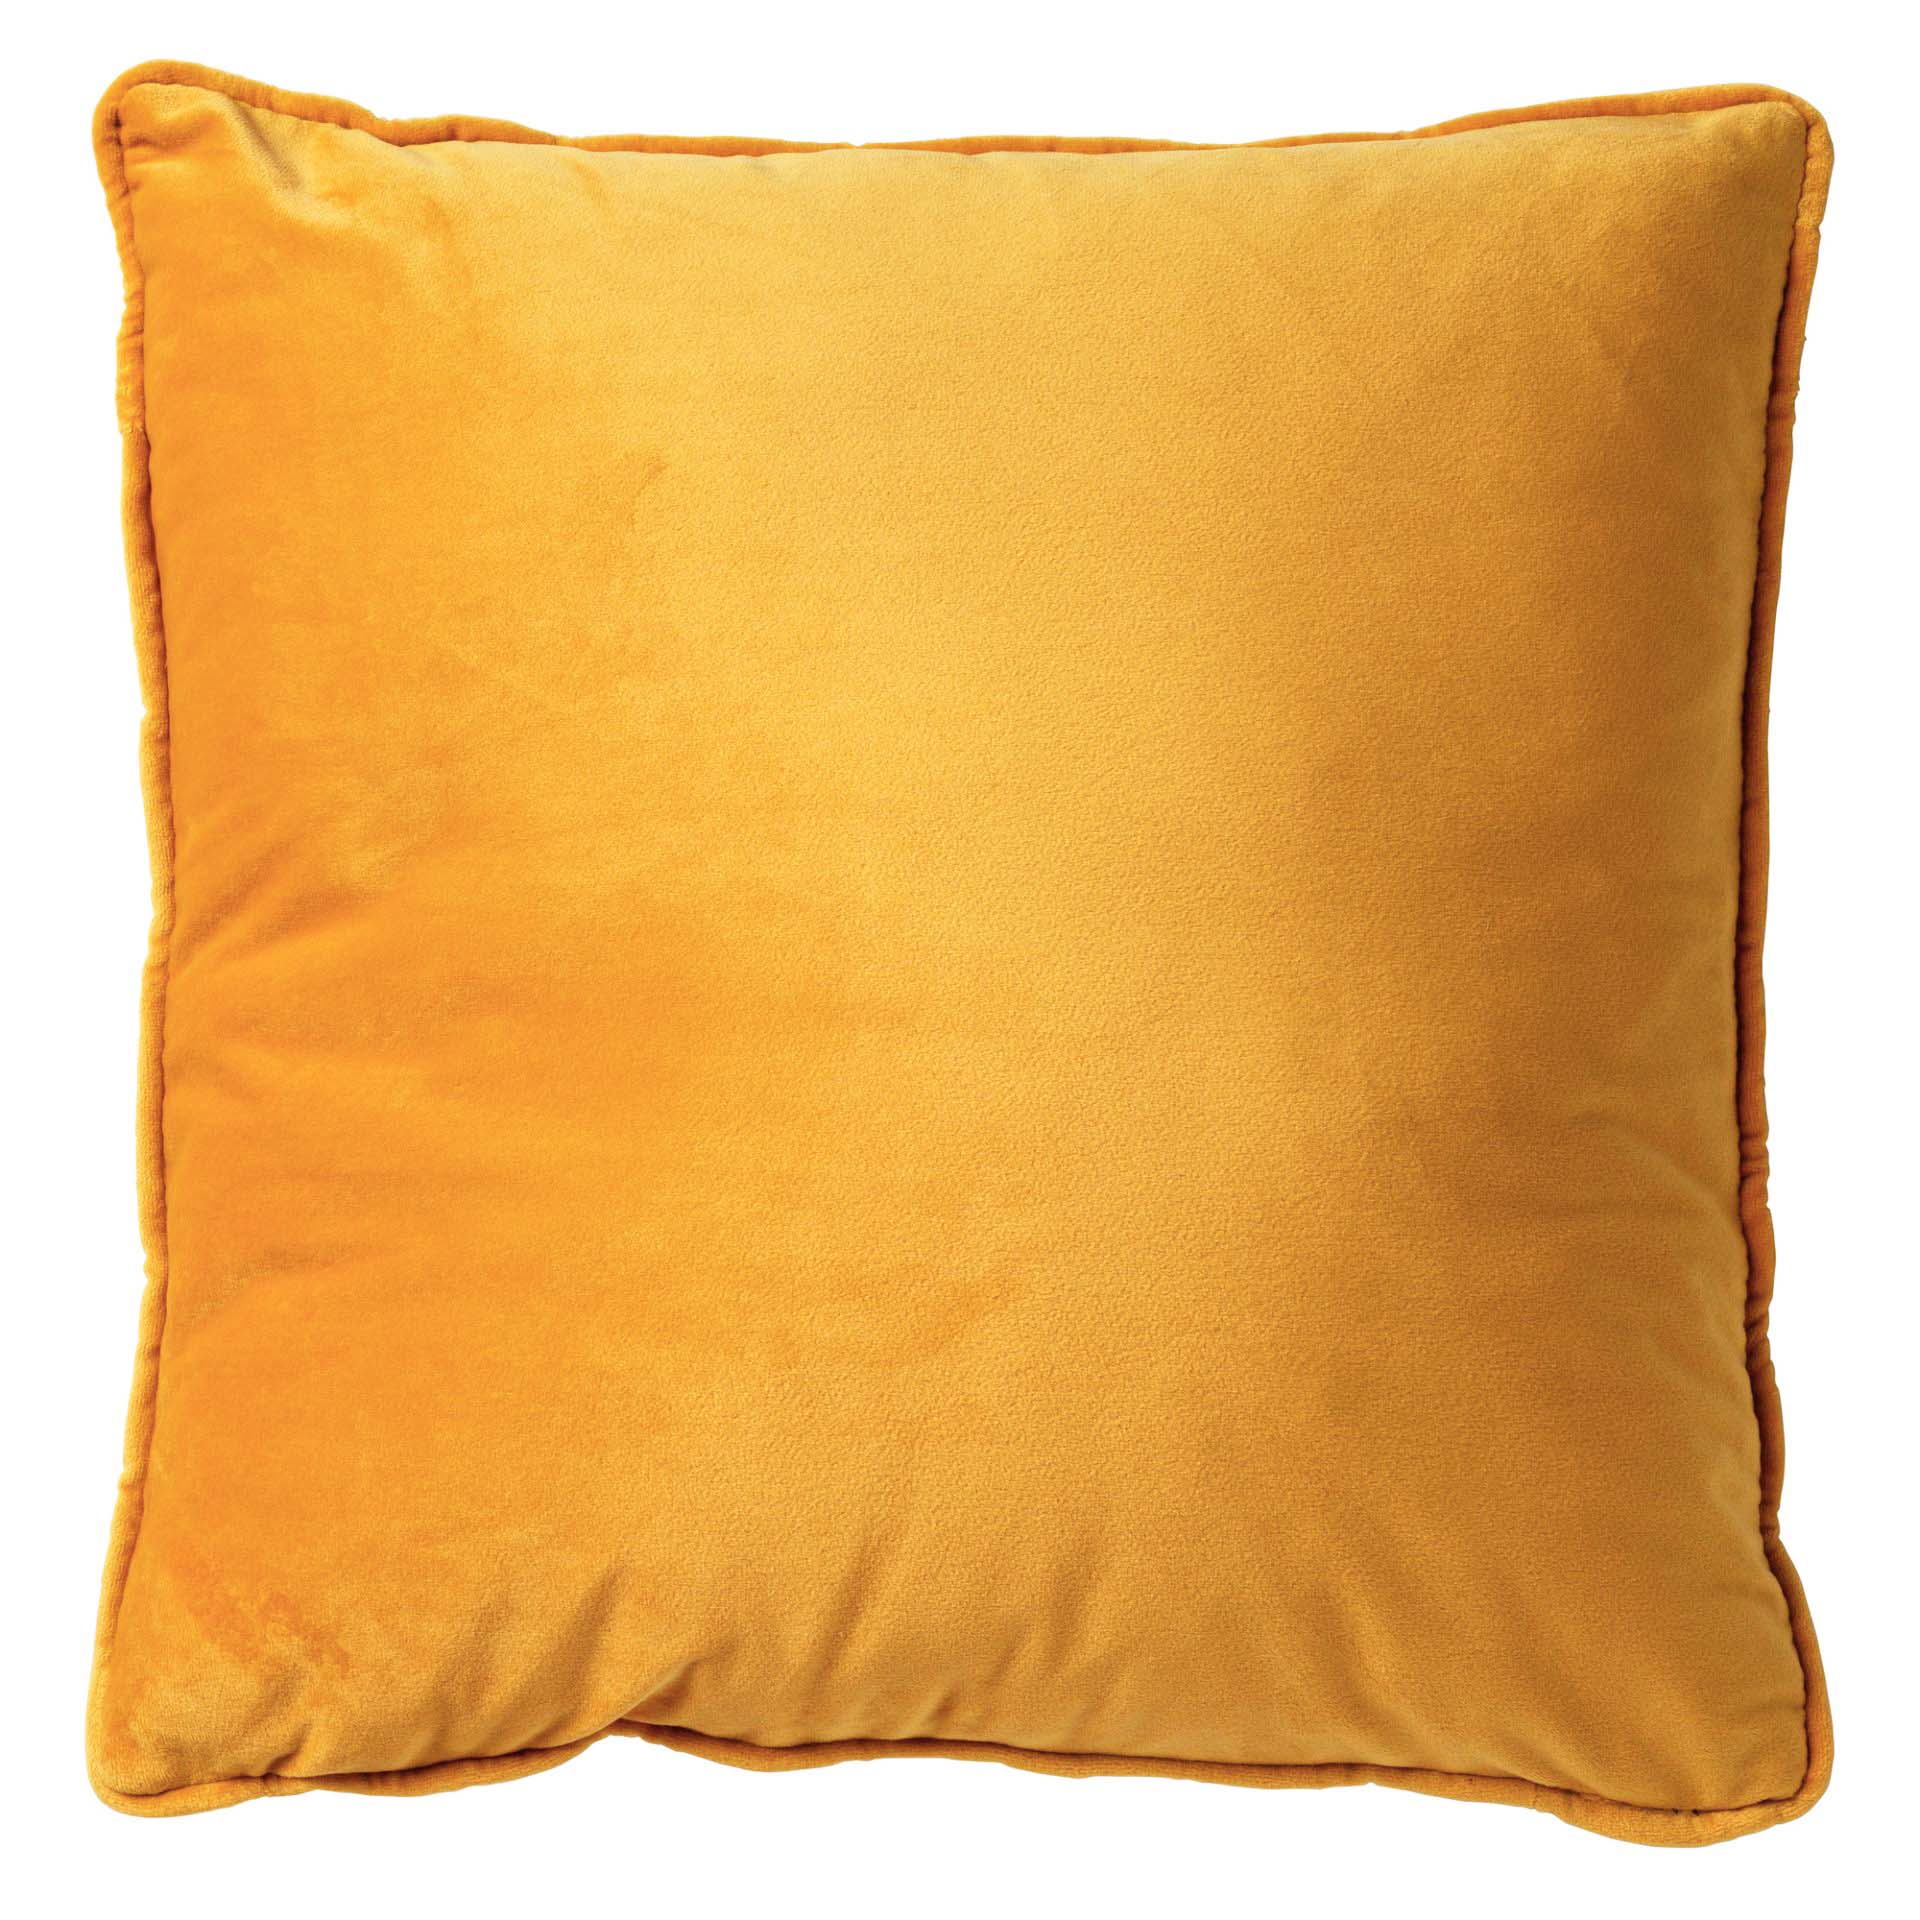 FINN - Cushion 45x45 cm Golden Glow - yellow-ochre